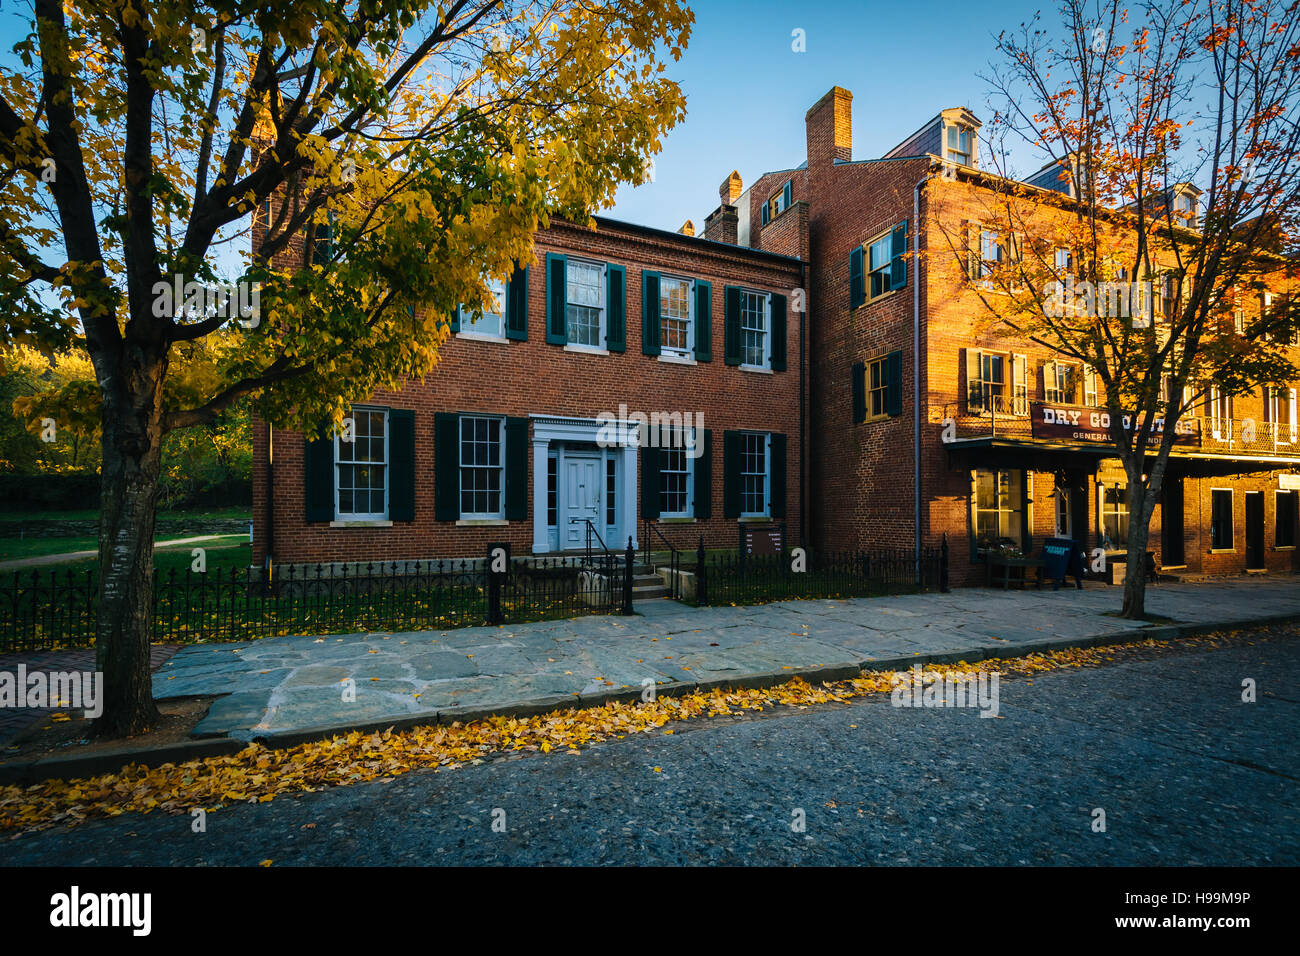 Colore di autunno ed edifici sulla Shenandoah Street, in harpers Ferry, West Virginia. Foto Stock